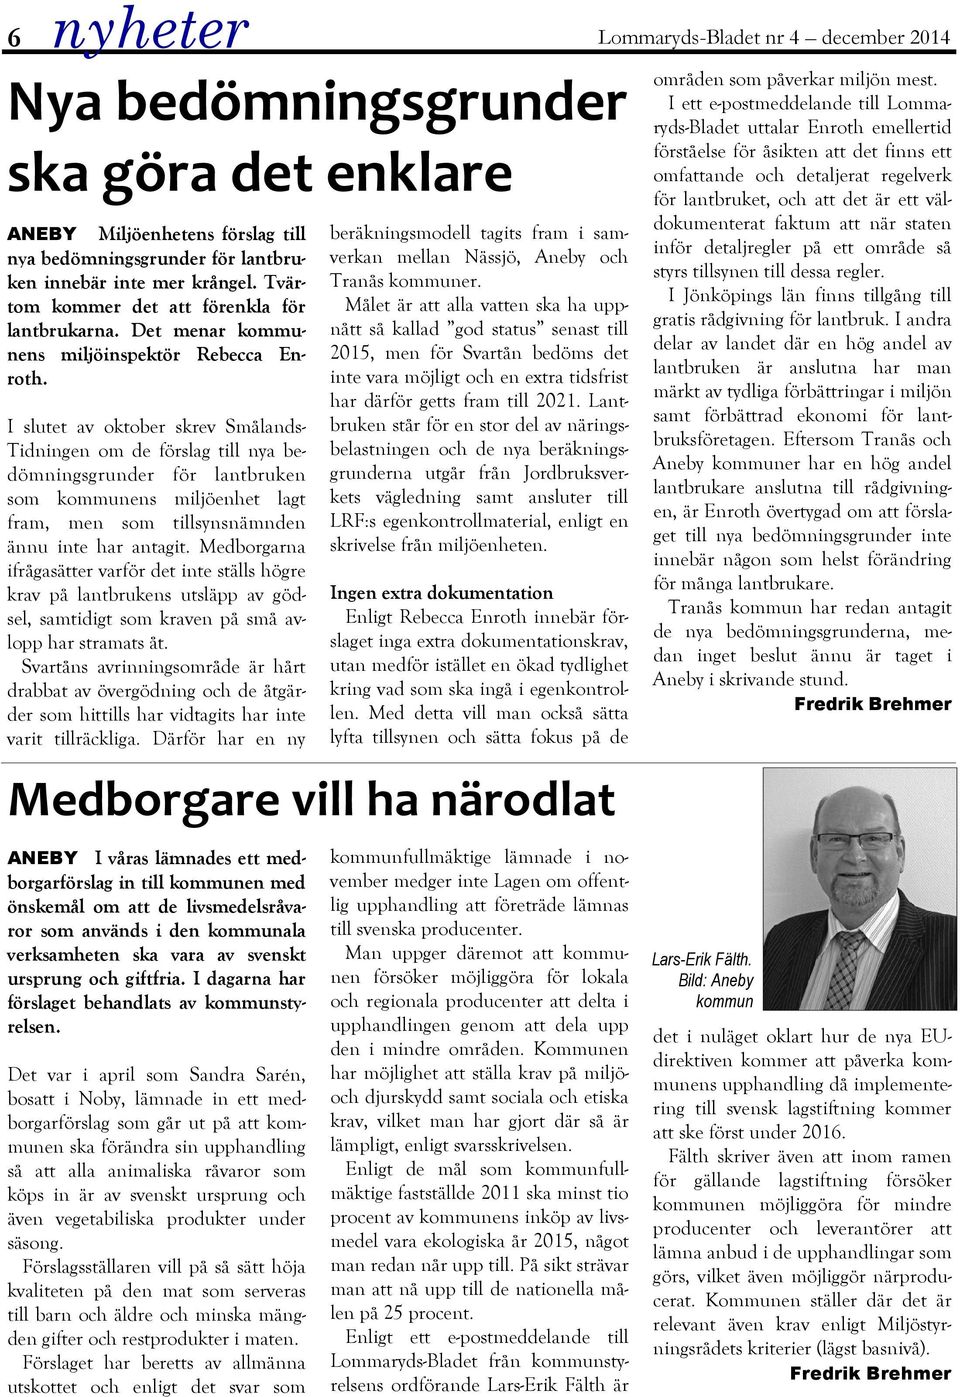 I slutet av oktober skrev Smålands- Tidningen om de förslag till nya bedömningsgrunder för lantbruken som kommunens miljöenhet lagt fram, men som tillsynsnämnden ännu inte har antagit.